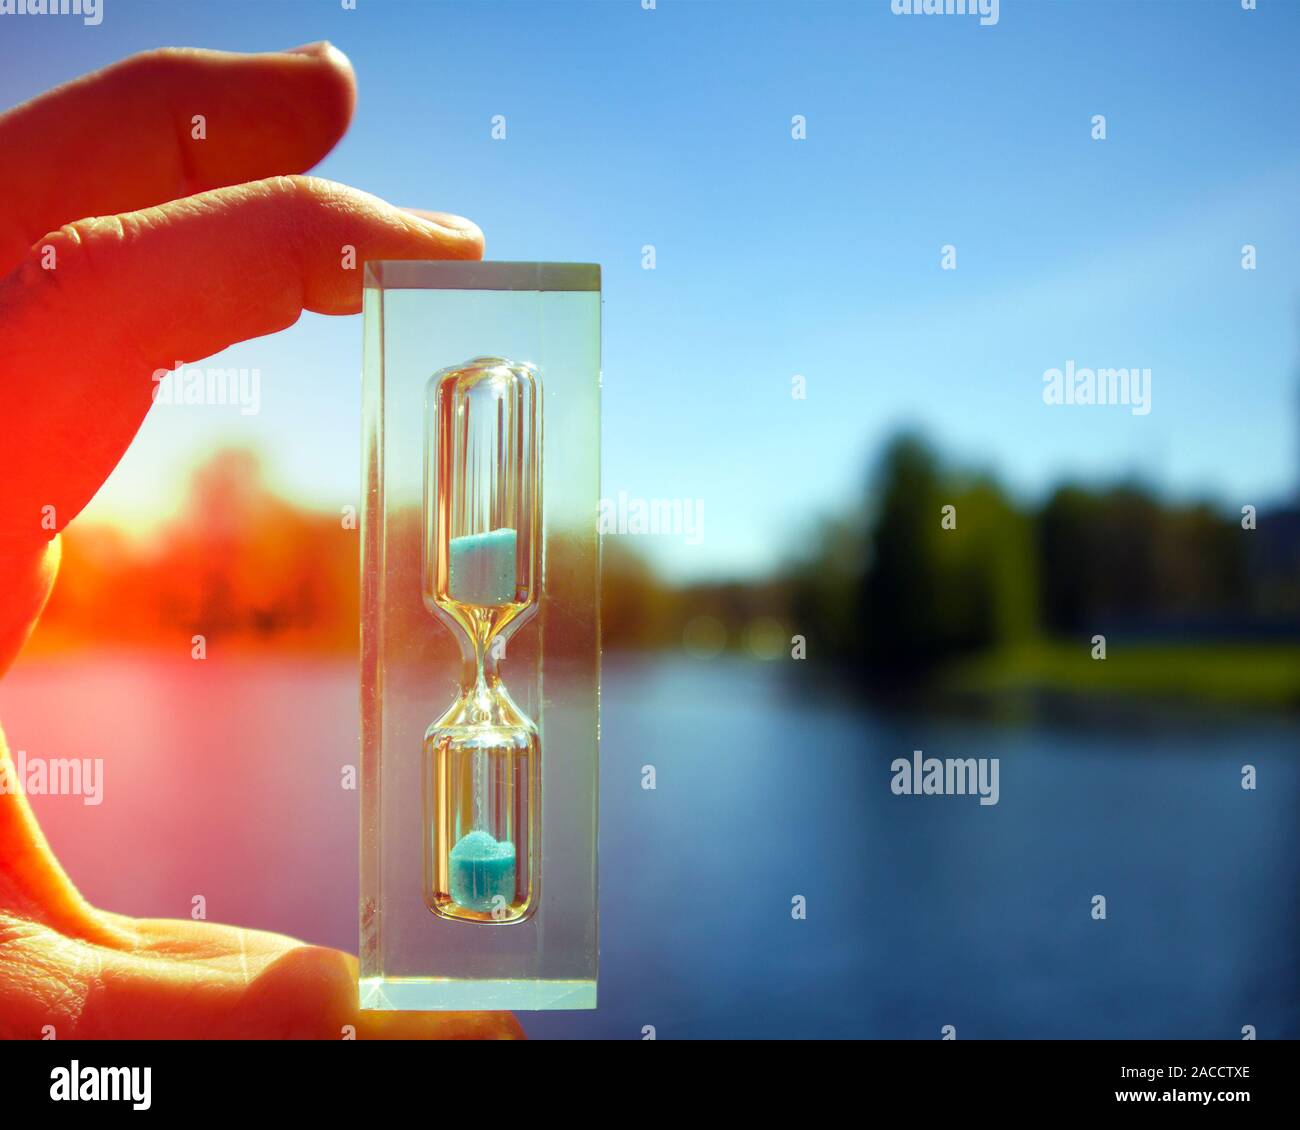 Sunlit human hand holding transparent avec hourglass sable bleu contre lac calme, concept de temps Banque D'Images